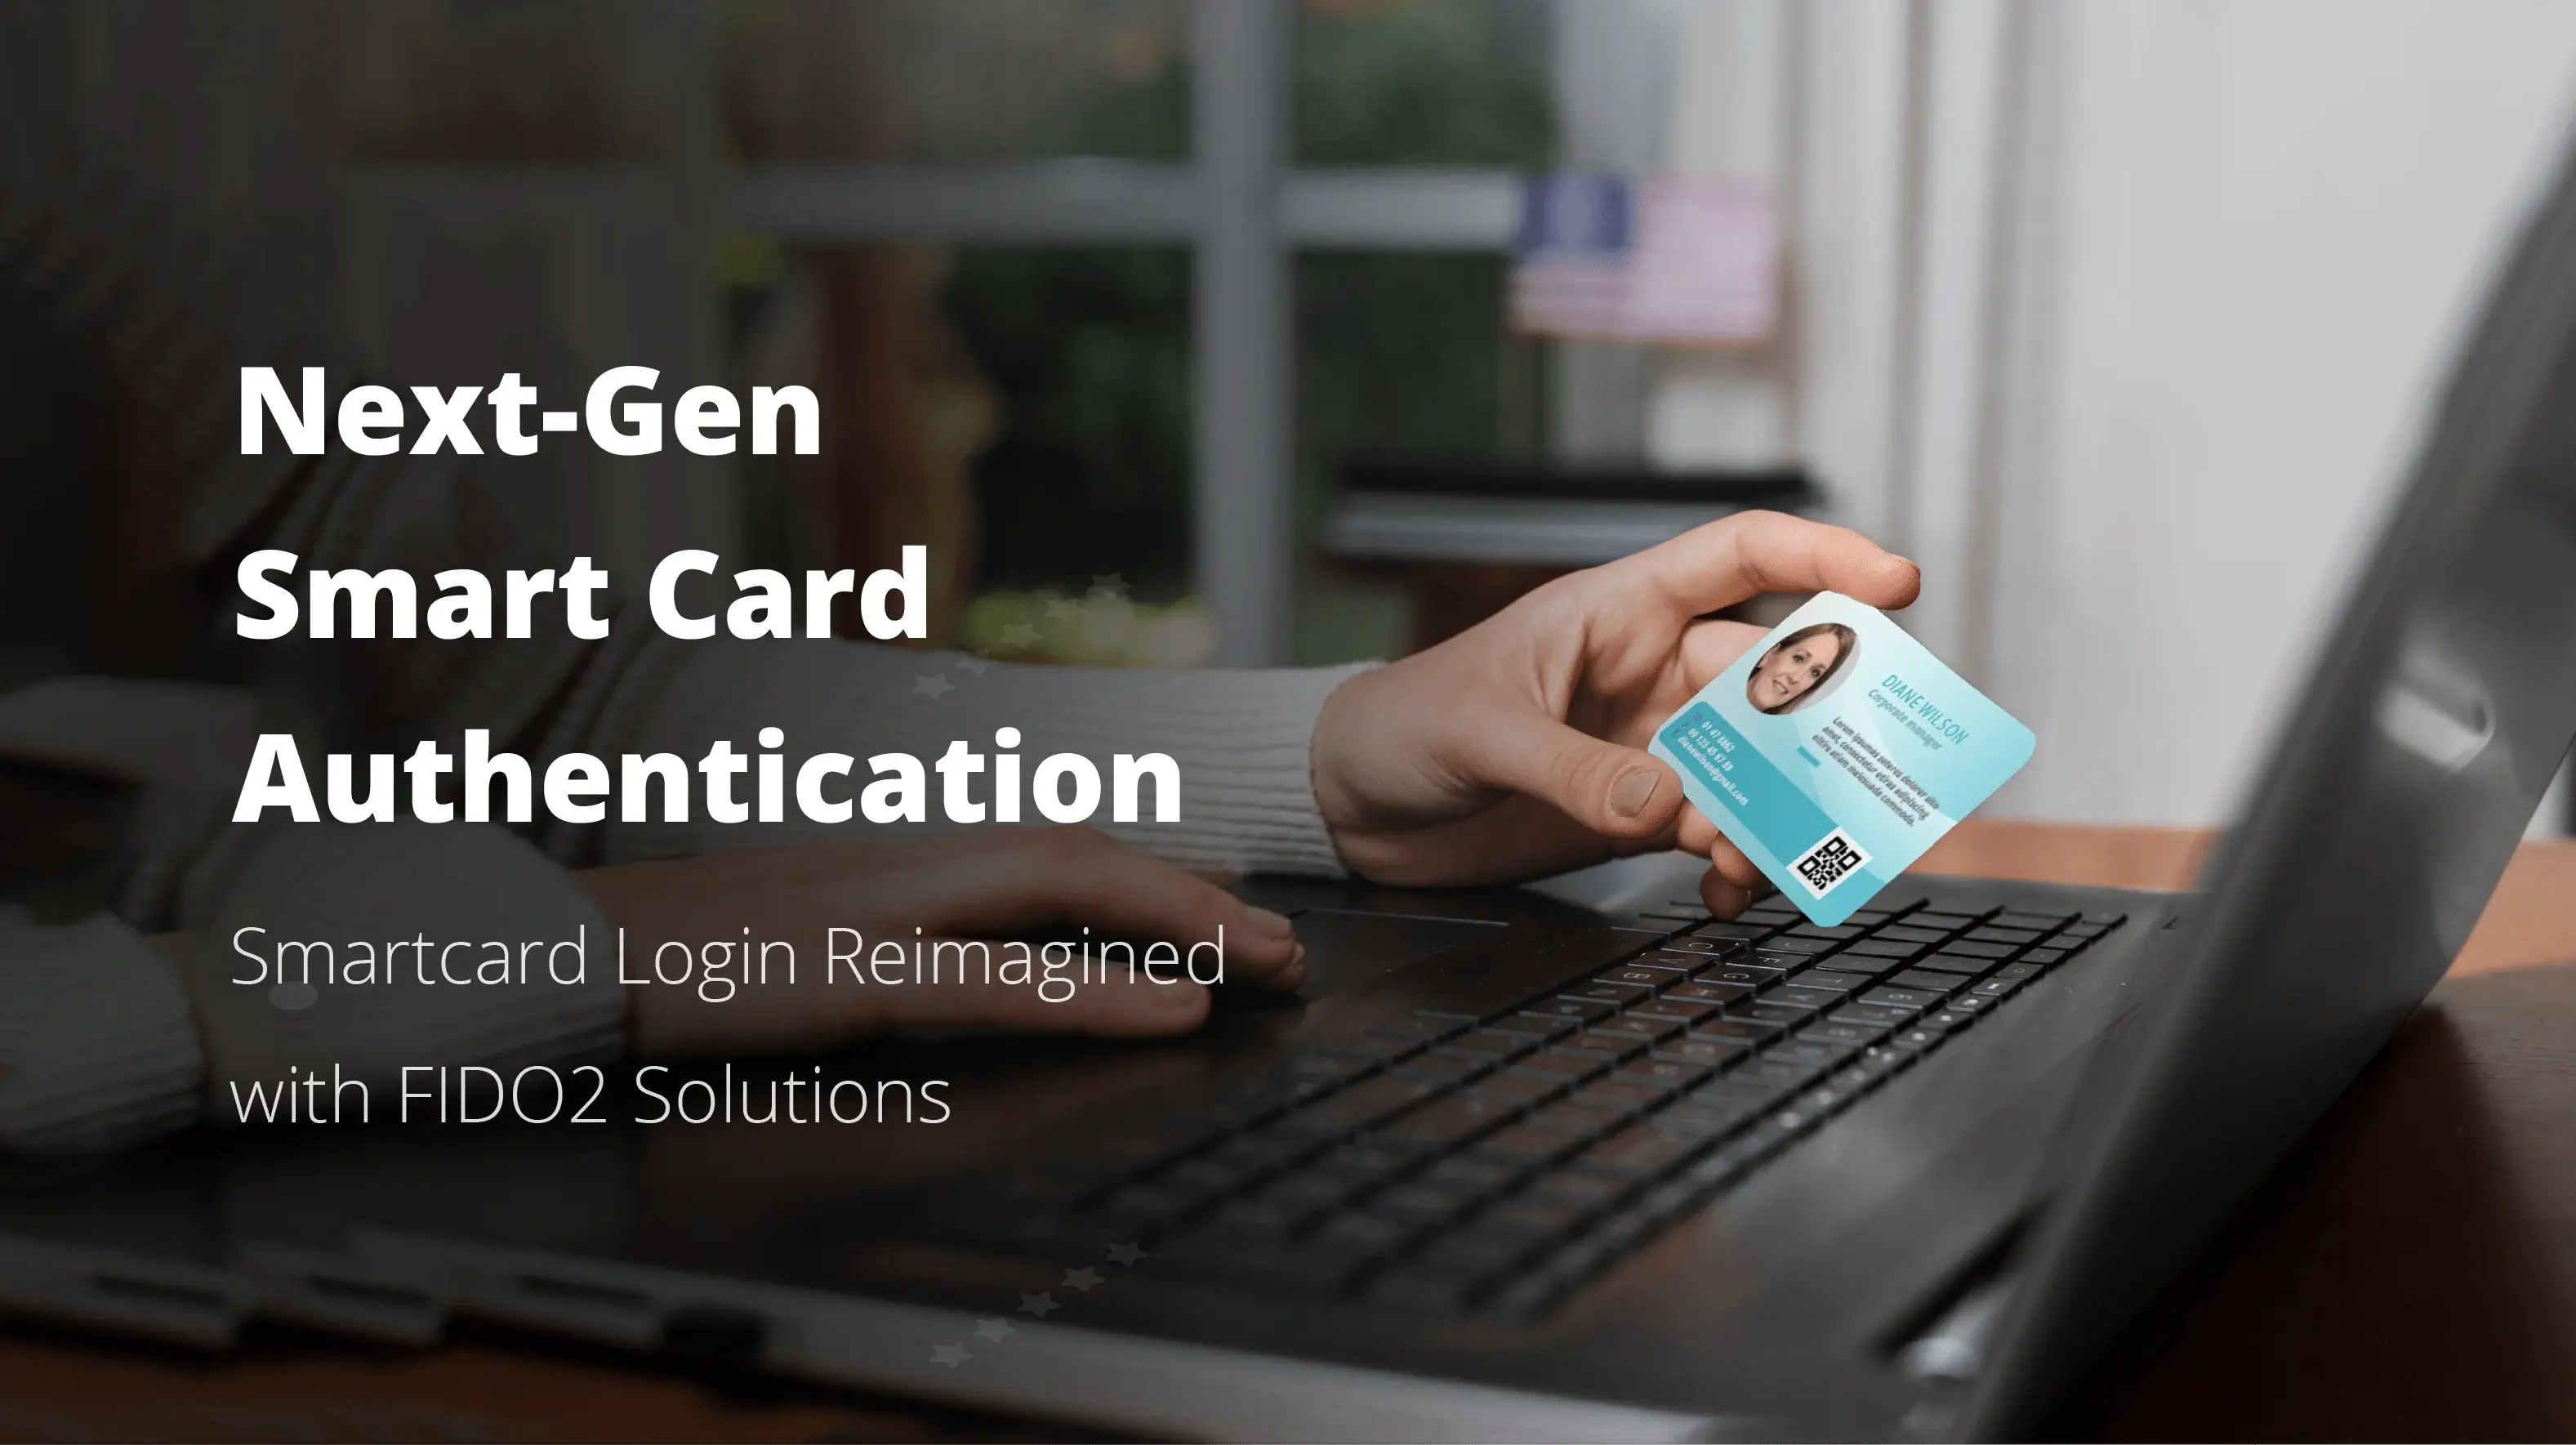 <b>Authentification par carte à puce nouvelle génération : comment l'authentification FIDO améliore-t-elle les connexions par carte à puce traditionnelles ?</b>